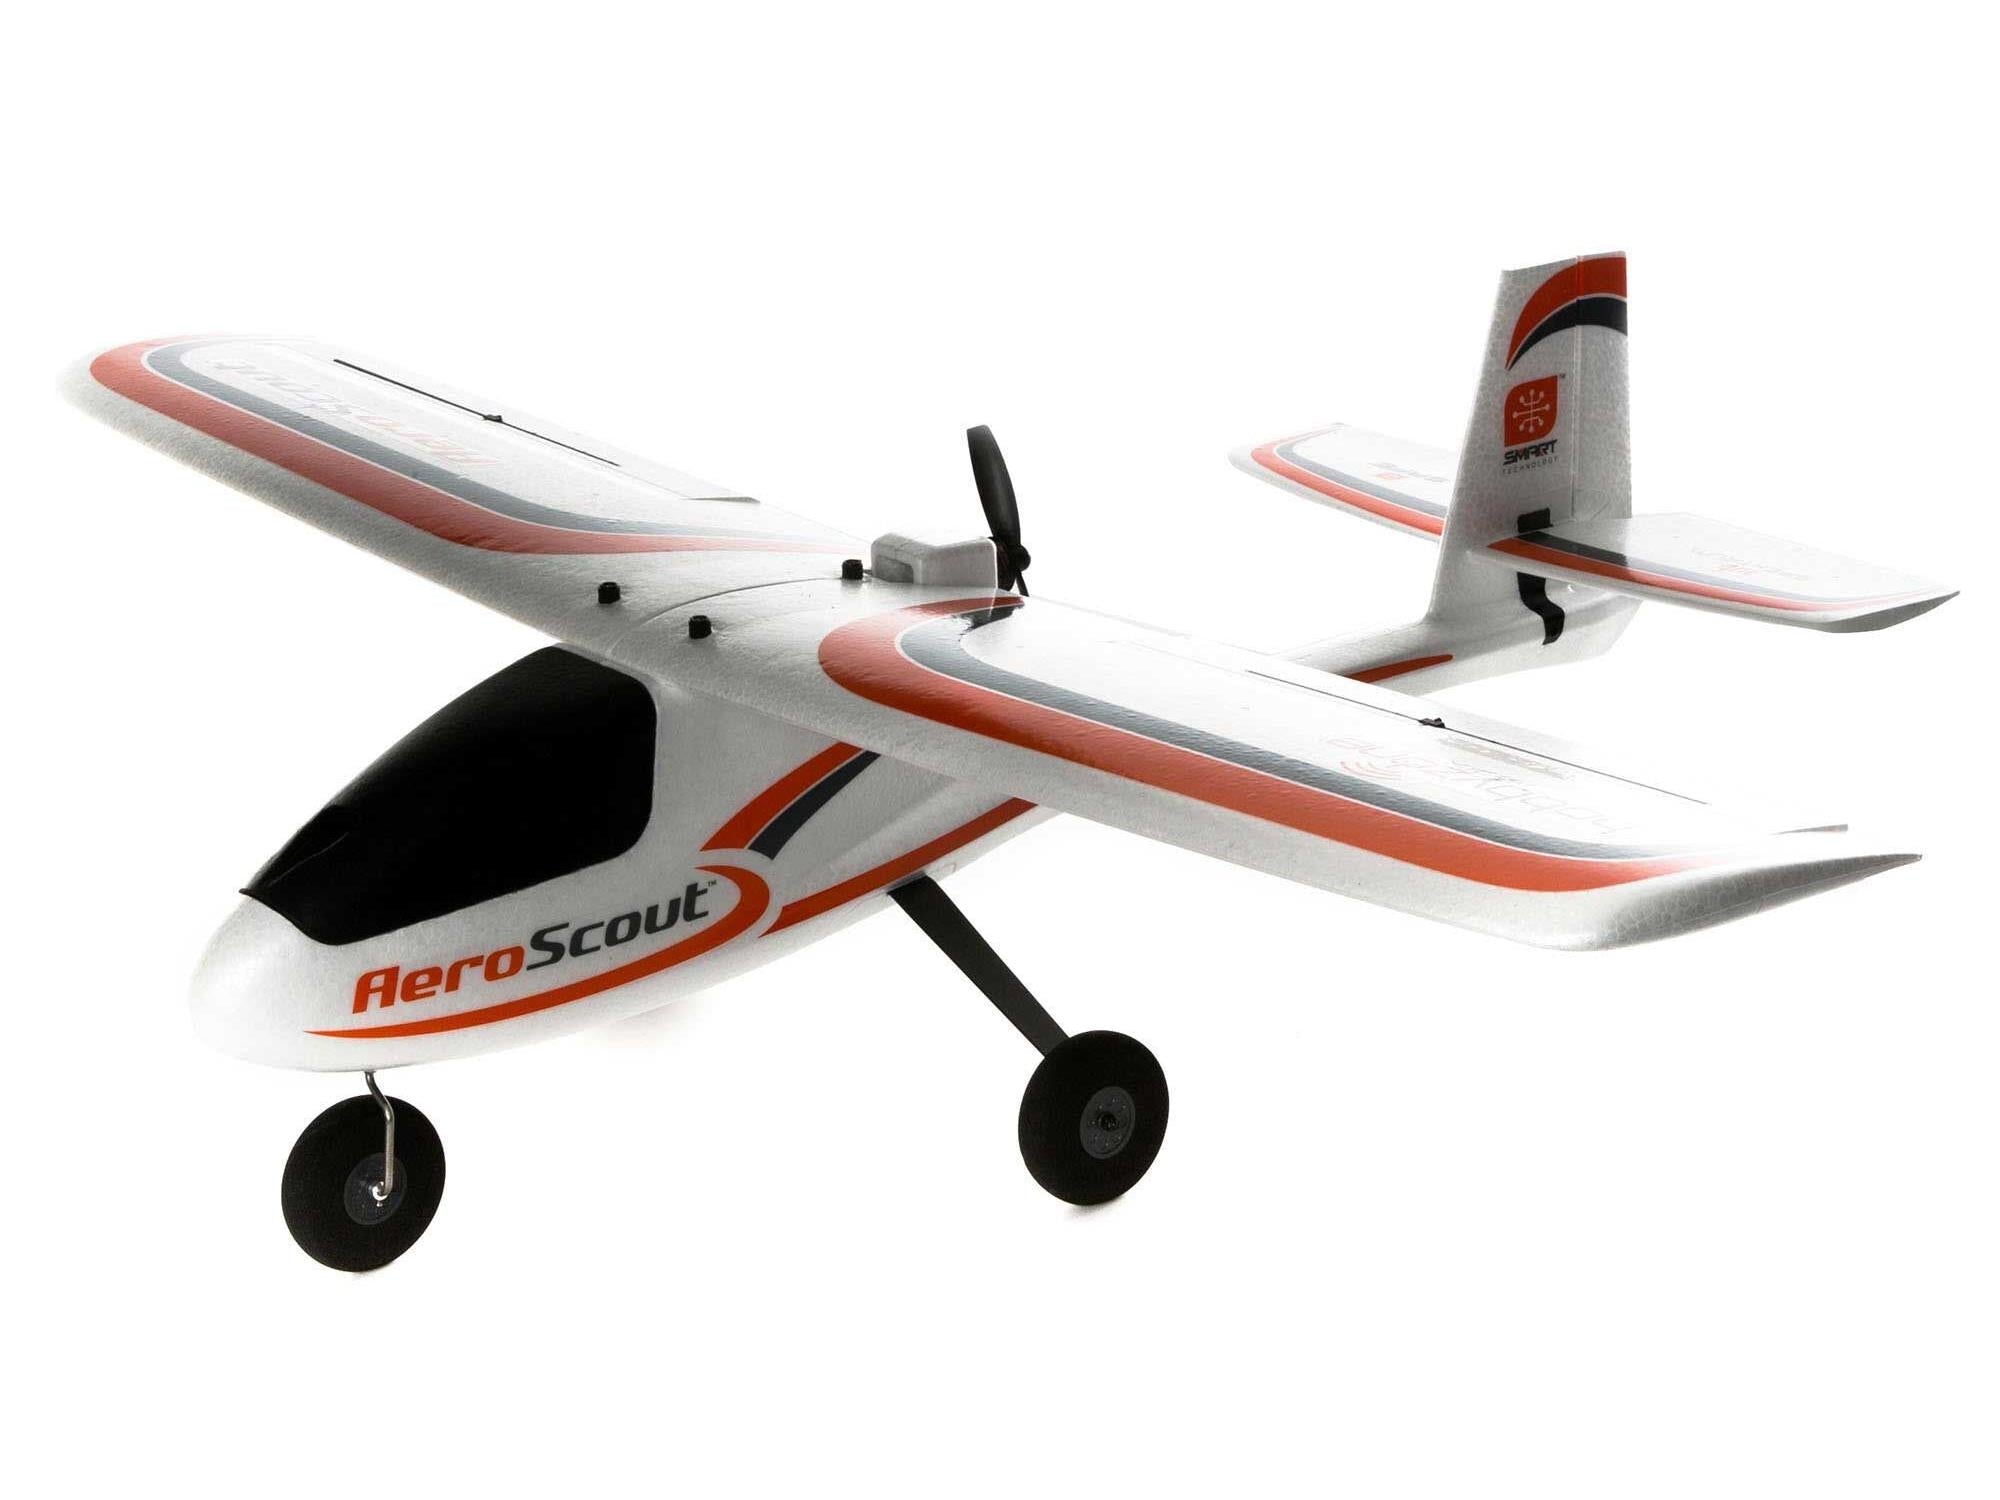 Hobbyzone AeroScout S 2 1.1m BNF Basic HBZ385001